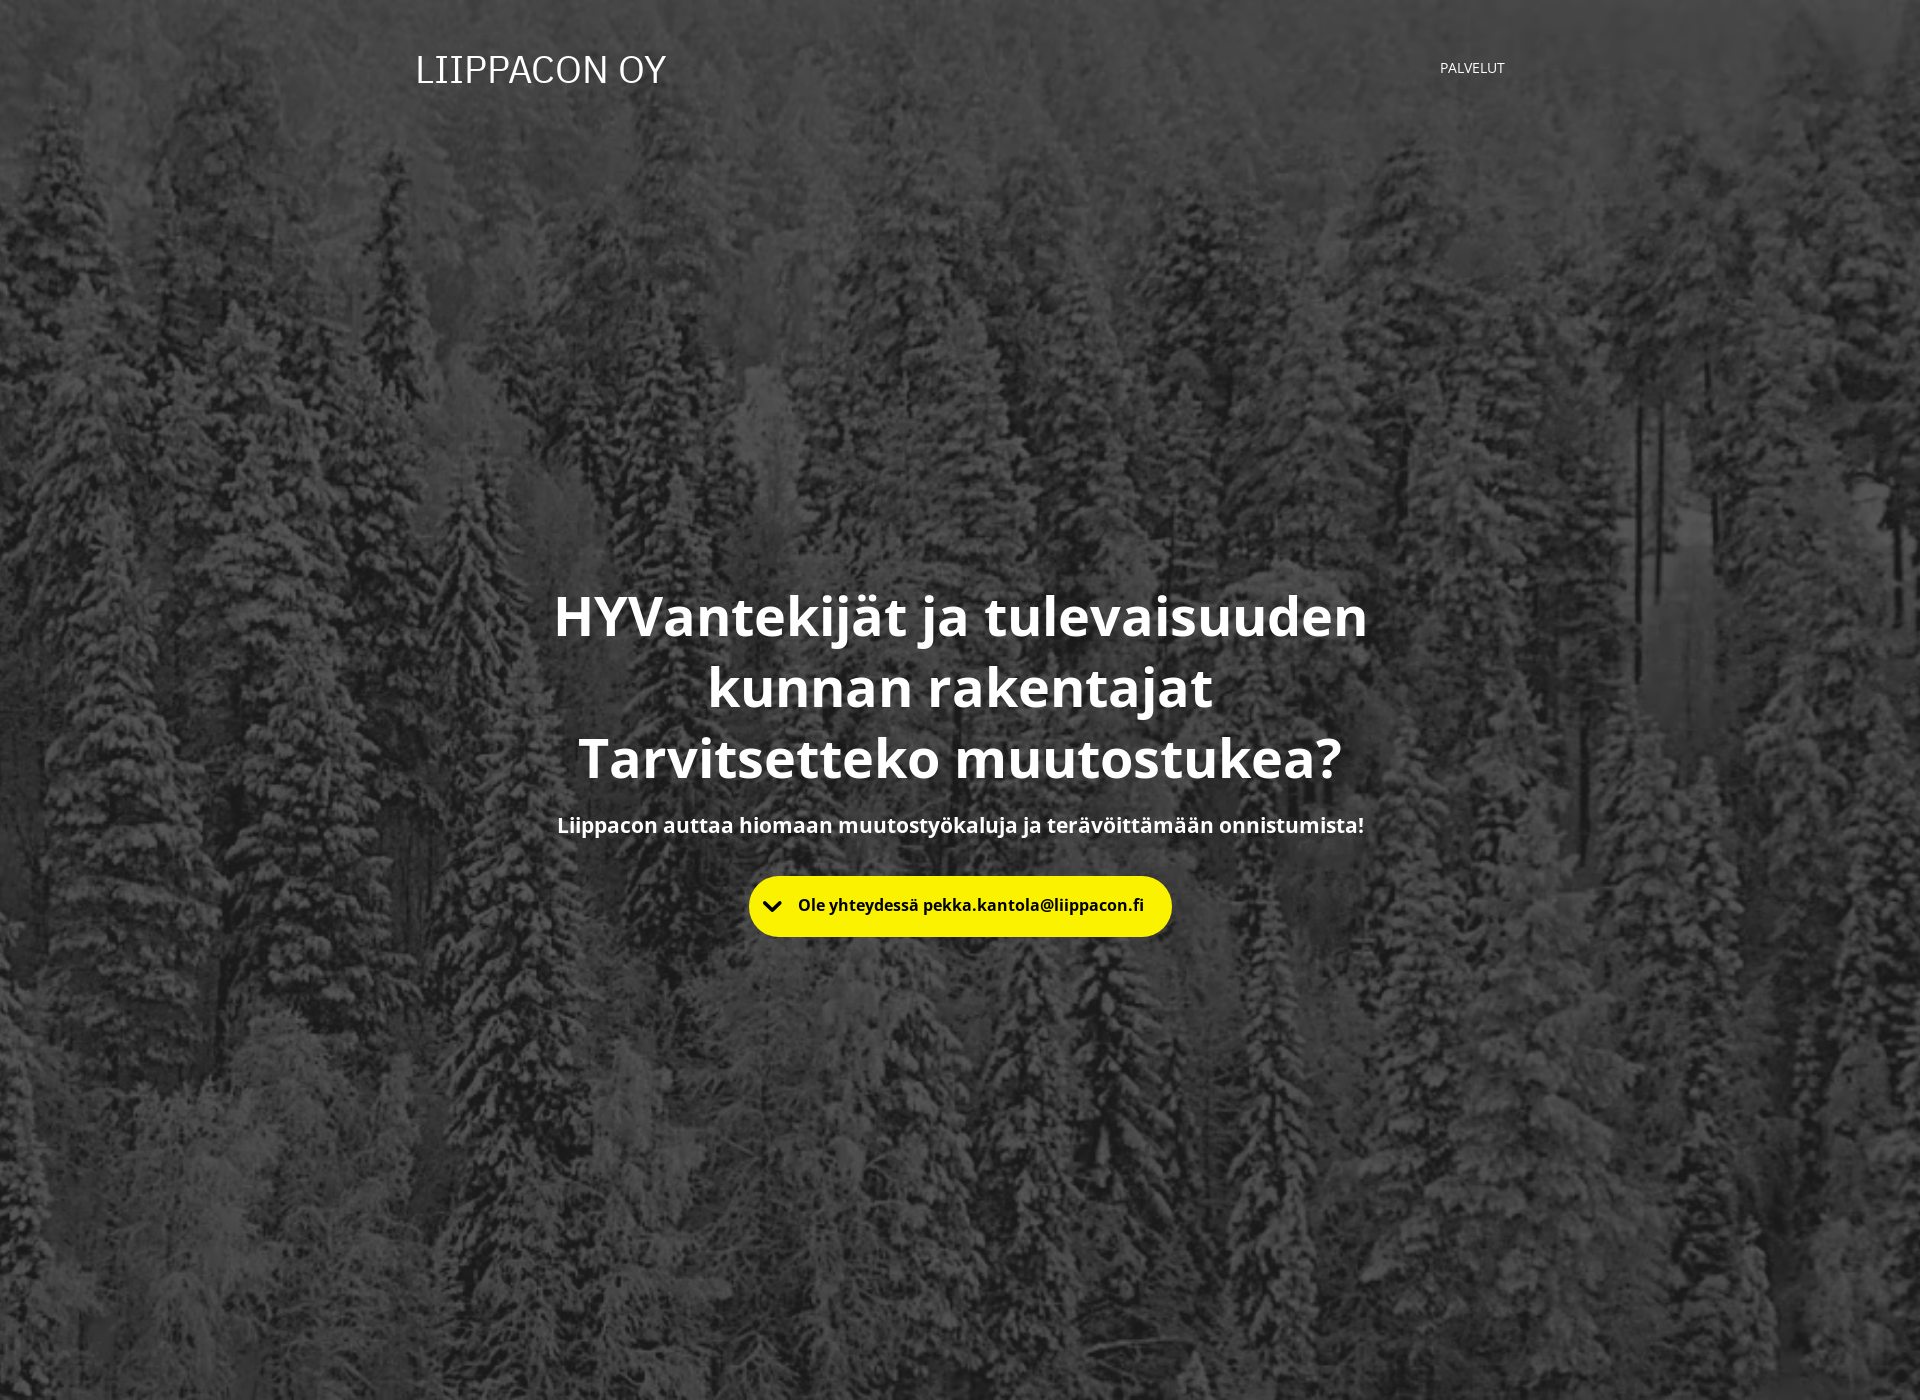 Näyttökuva liippacon.fi